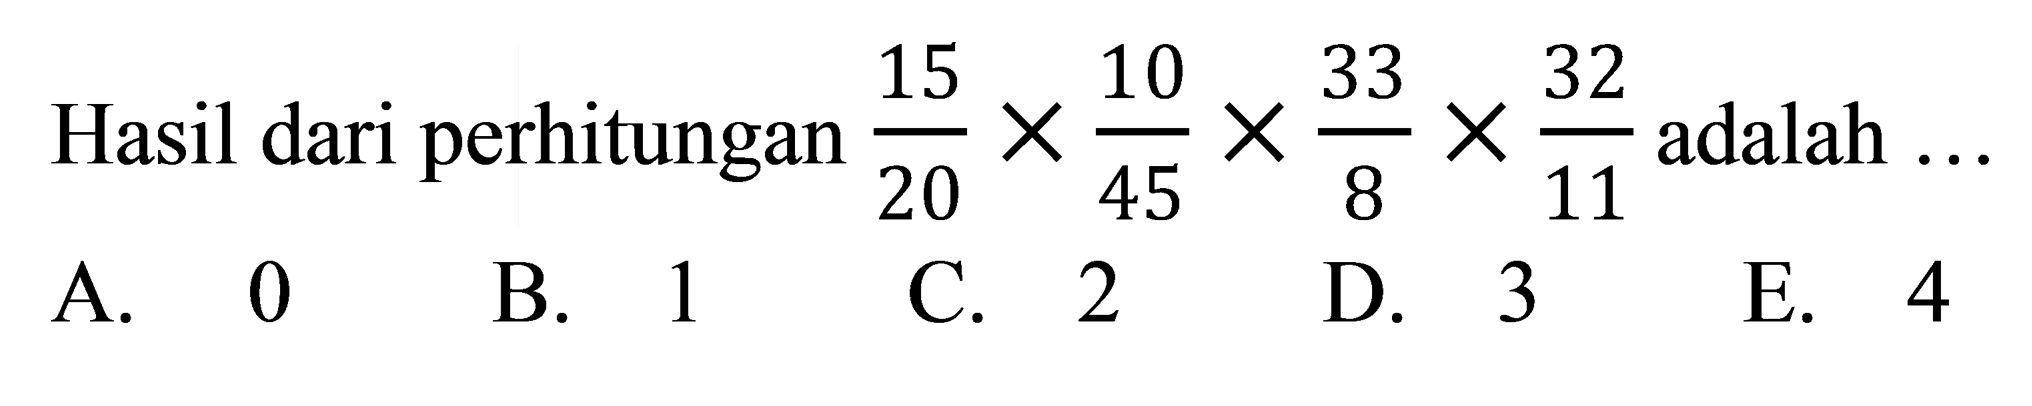 Hasil dari perhitungan  (15)/(20) x (10)/(45) x (33)/(8) x (32)/(11)  adalah ...
A. 0
B. 1
C. 2
D. 3
E. 4